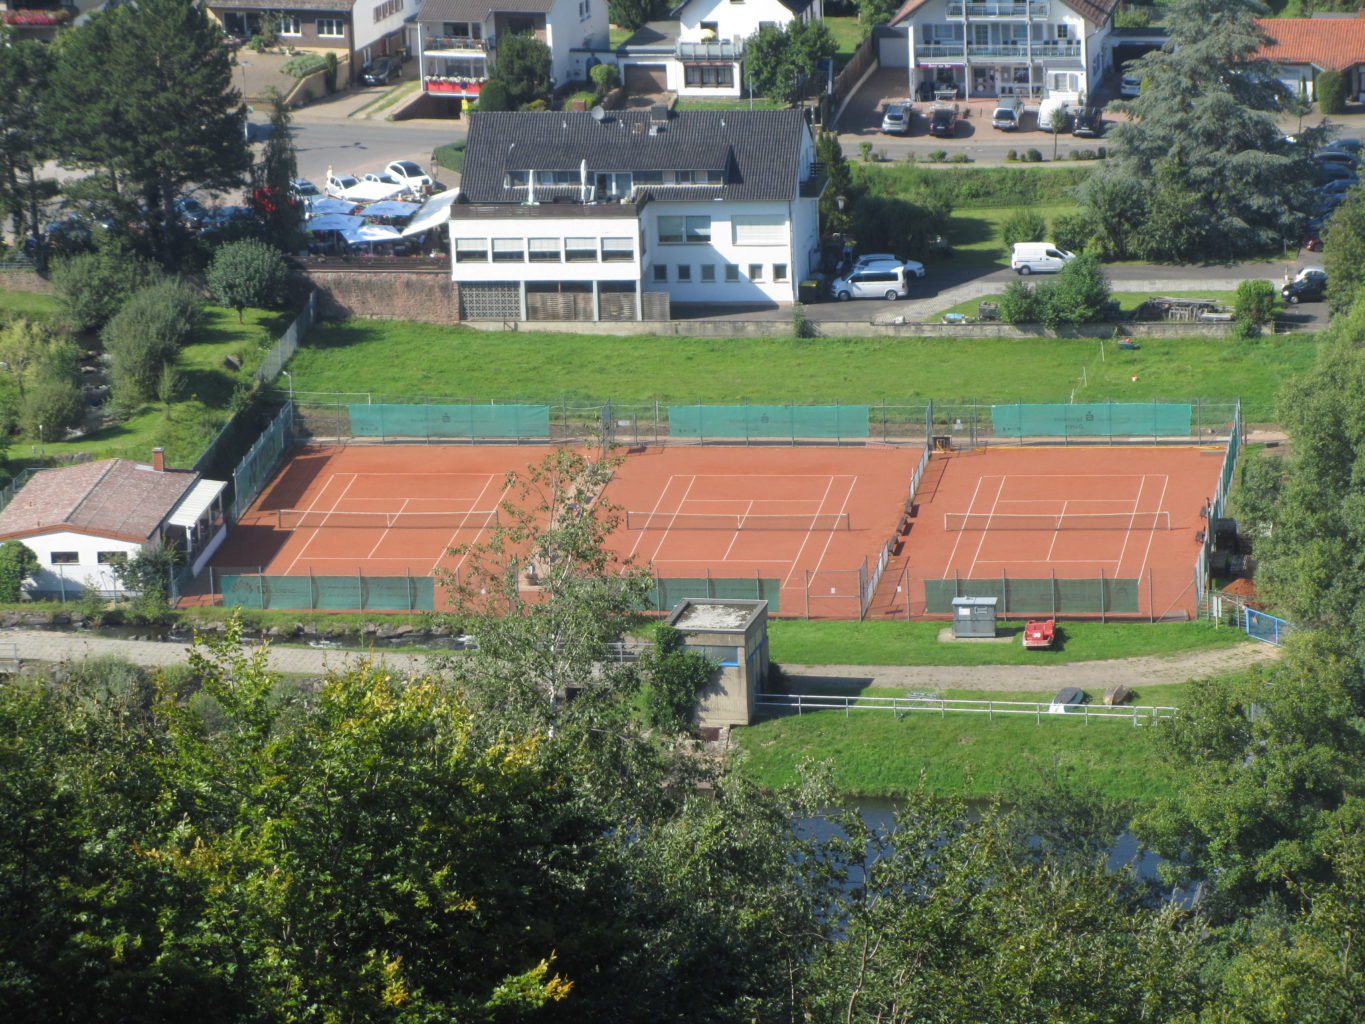 Tennisplatz Obermaubach Blick von oben